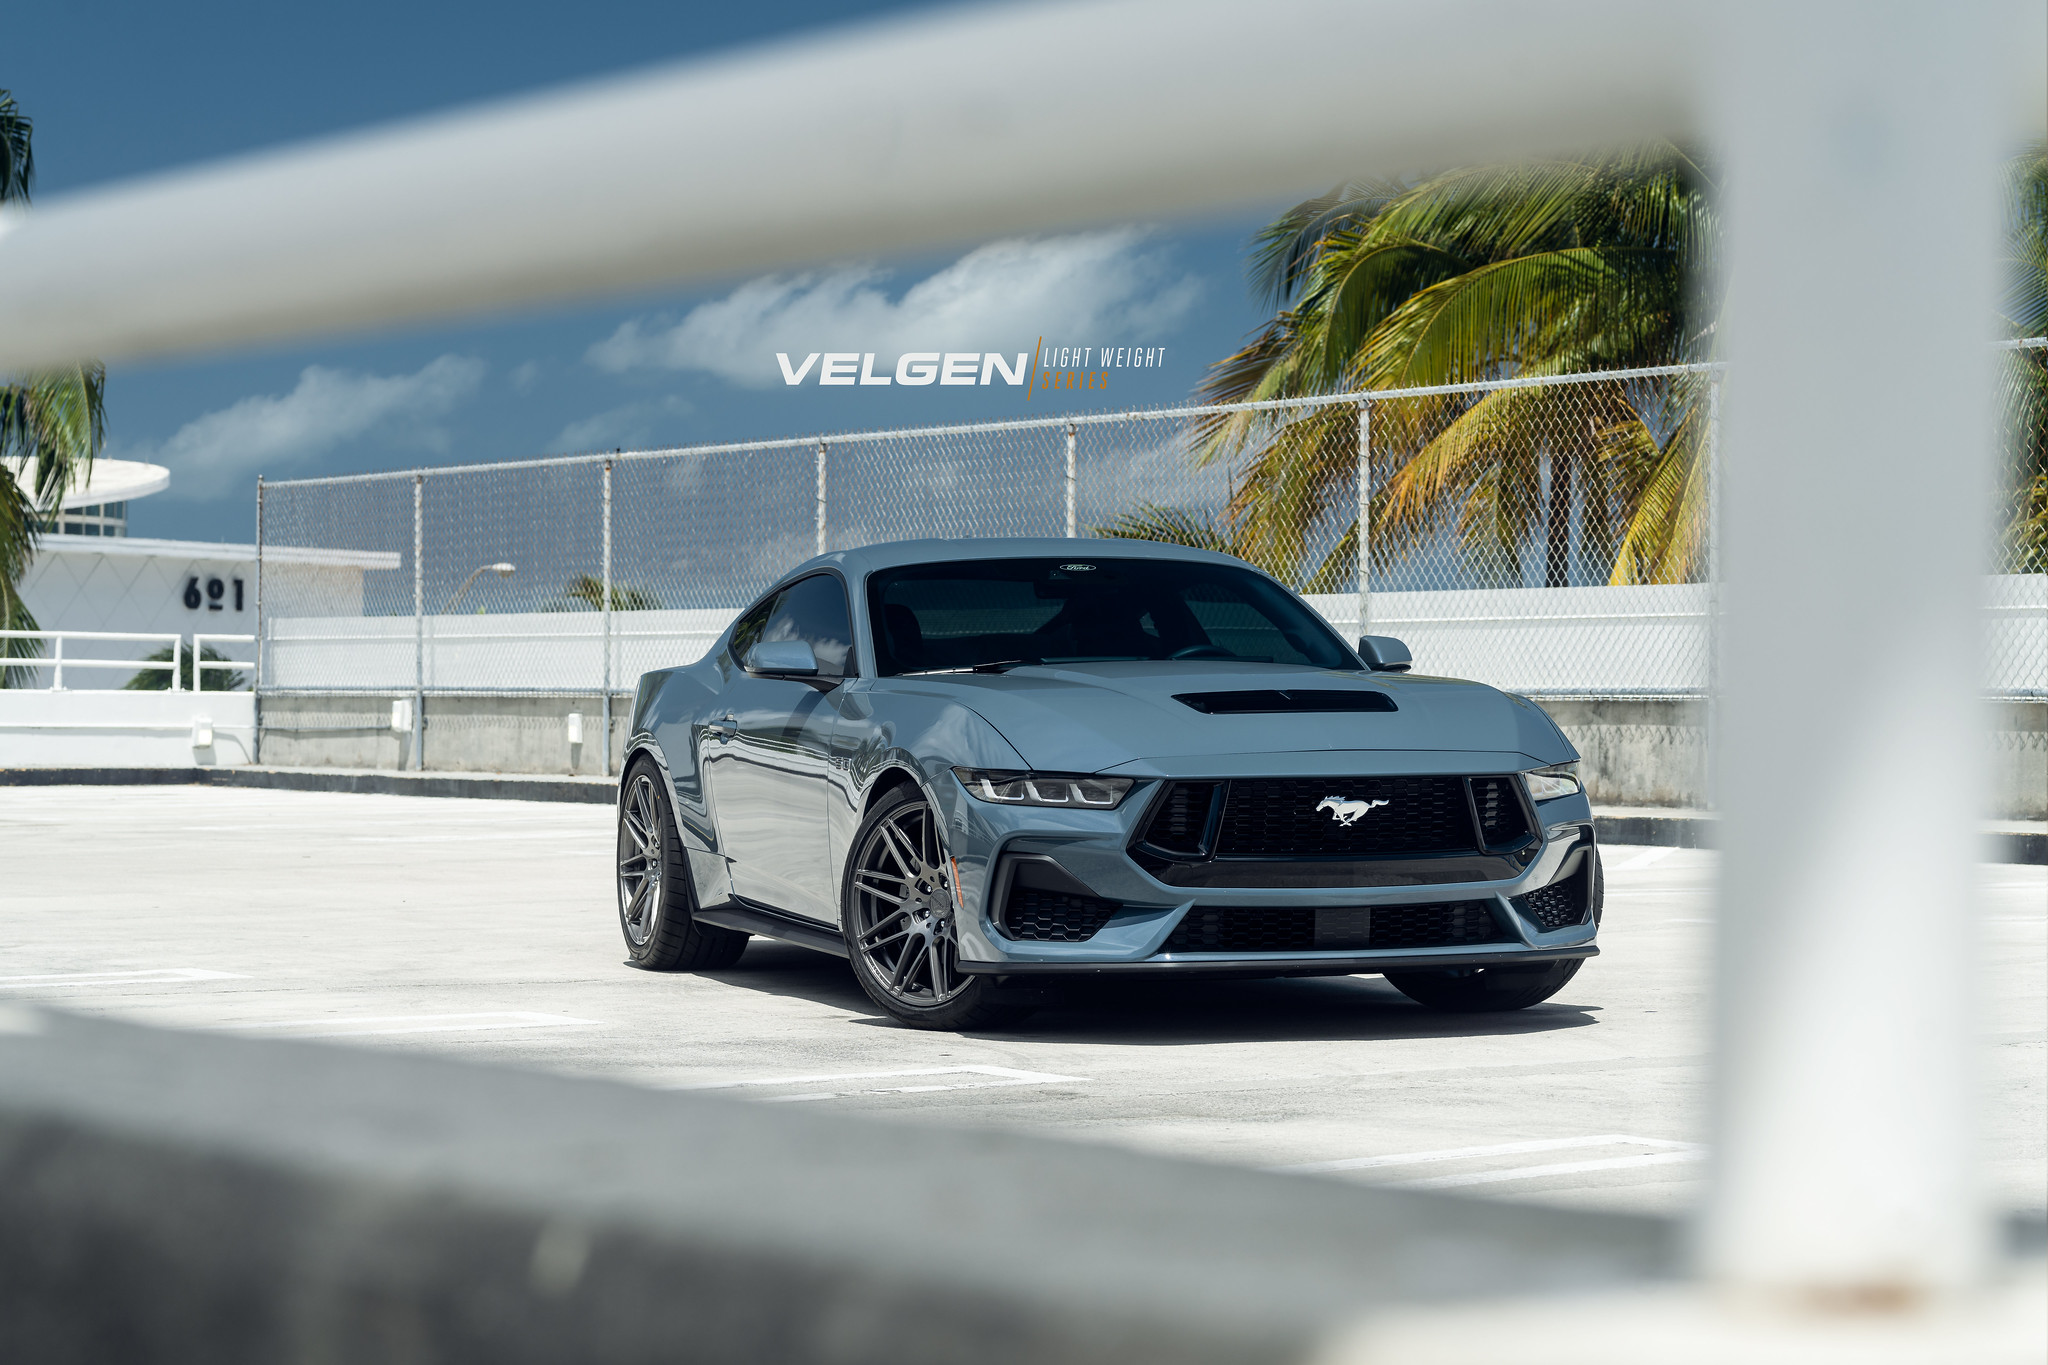 S650 Mustang Velgen wheels for your S650 Mustang | Vibe Motorsports 53681050614_e517f91ff3_k